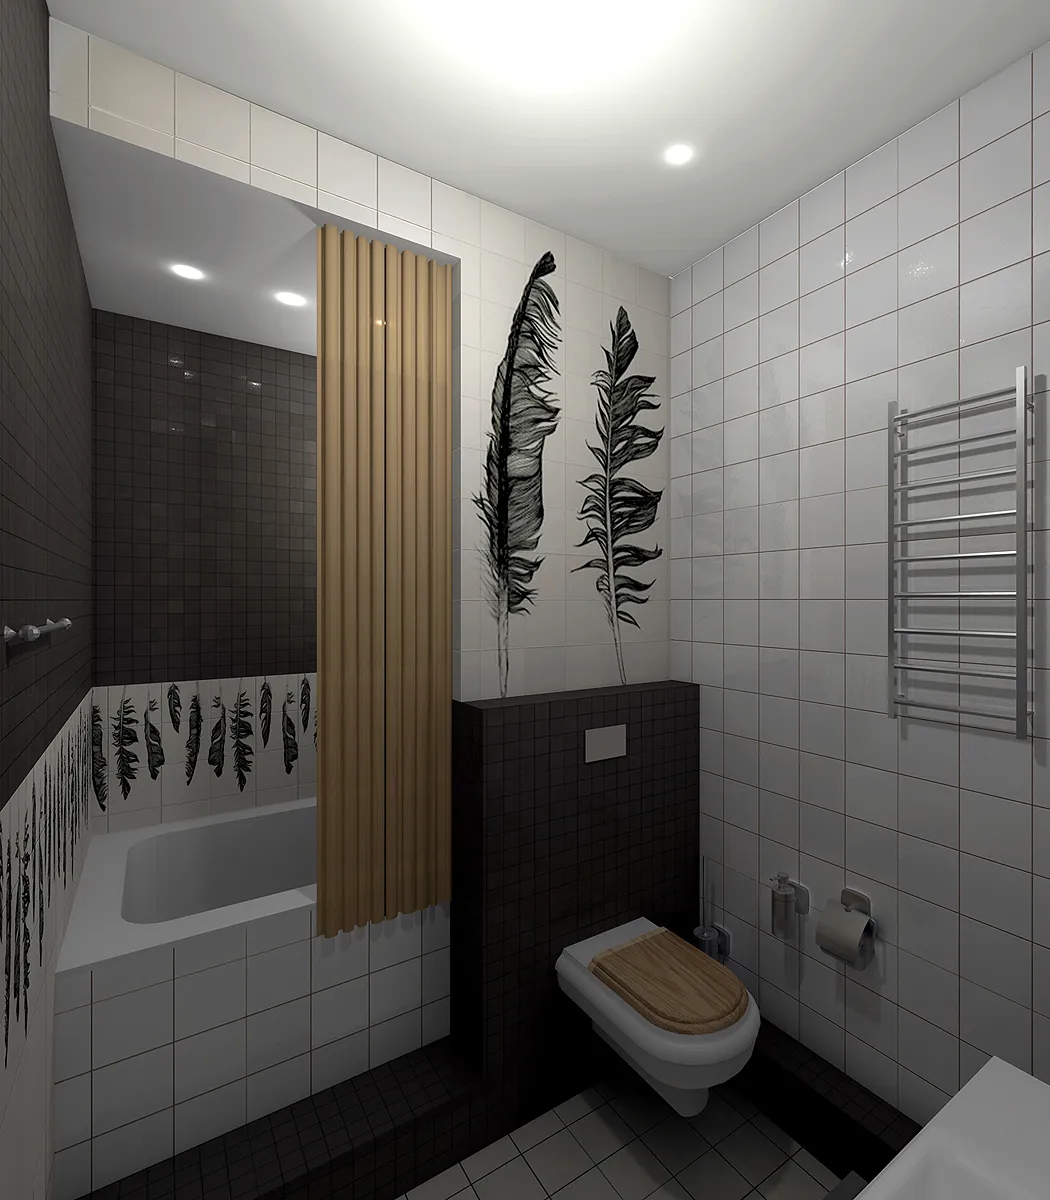 Как создать стильный дизайн ванной комнаты 4 кв м?